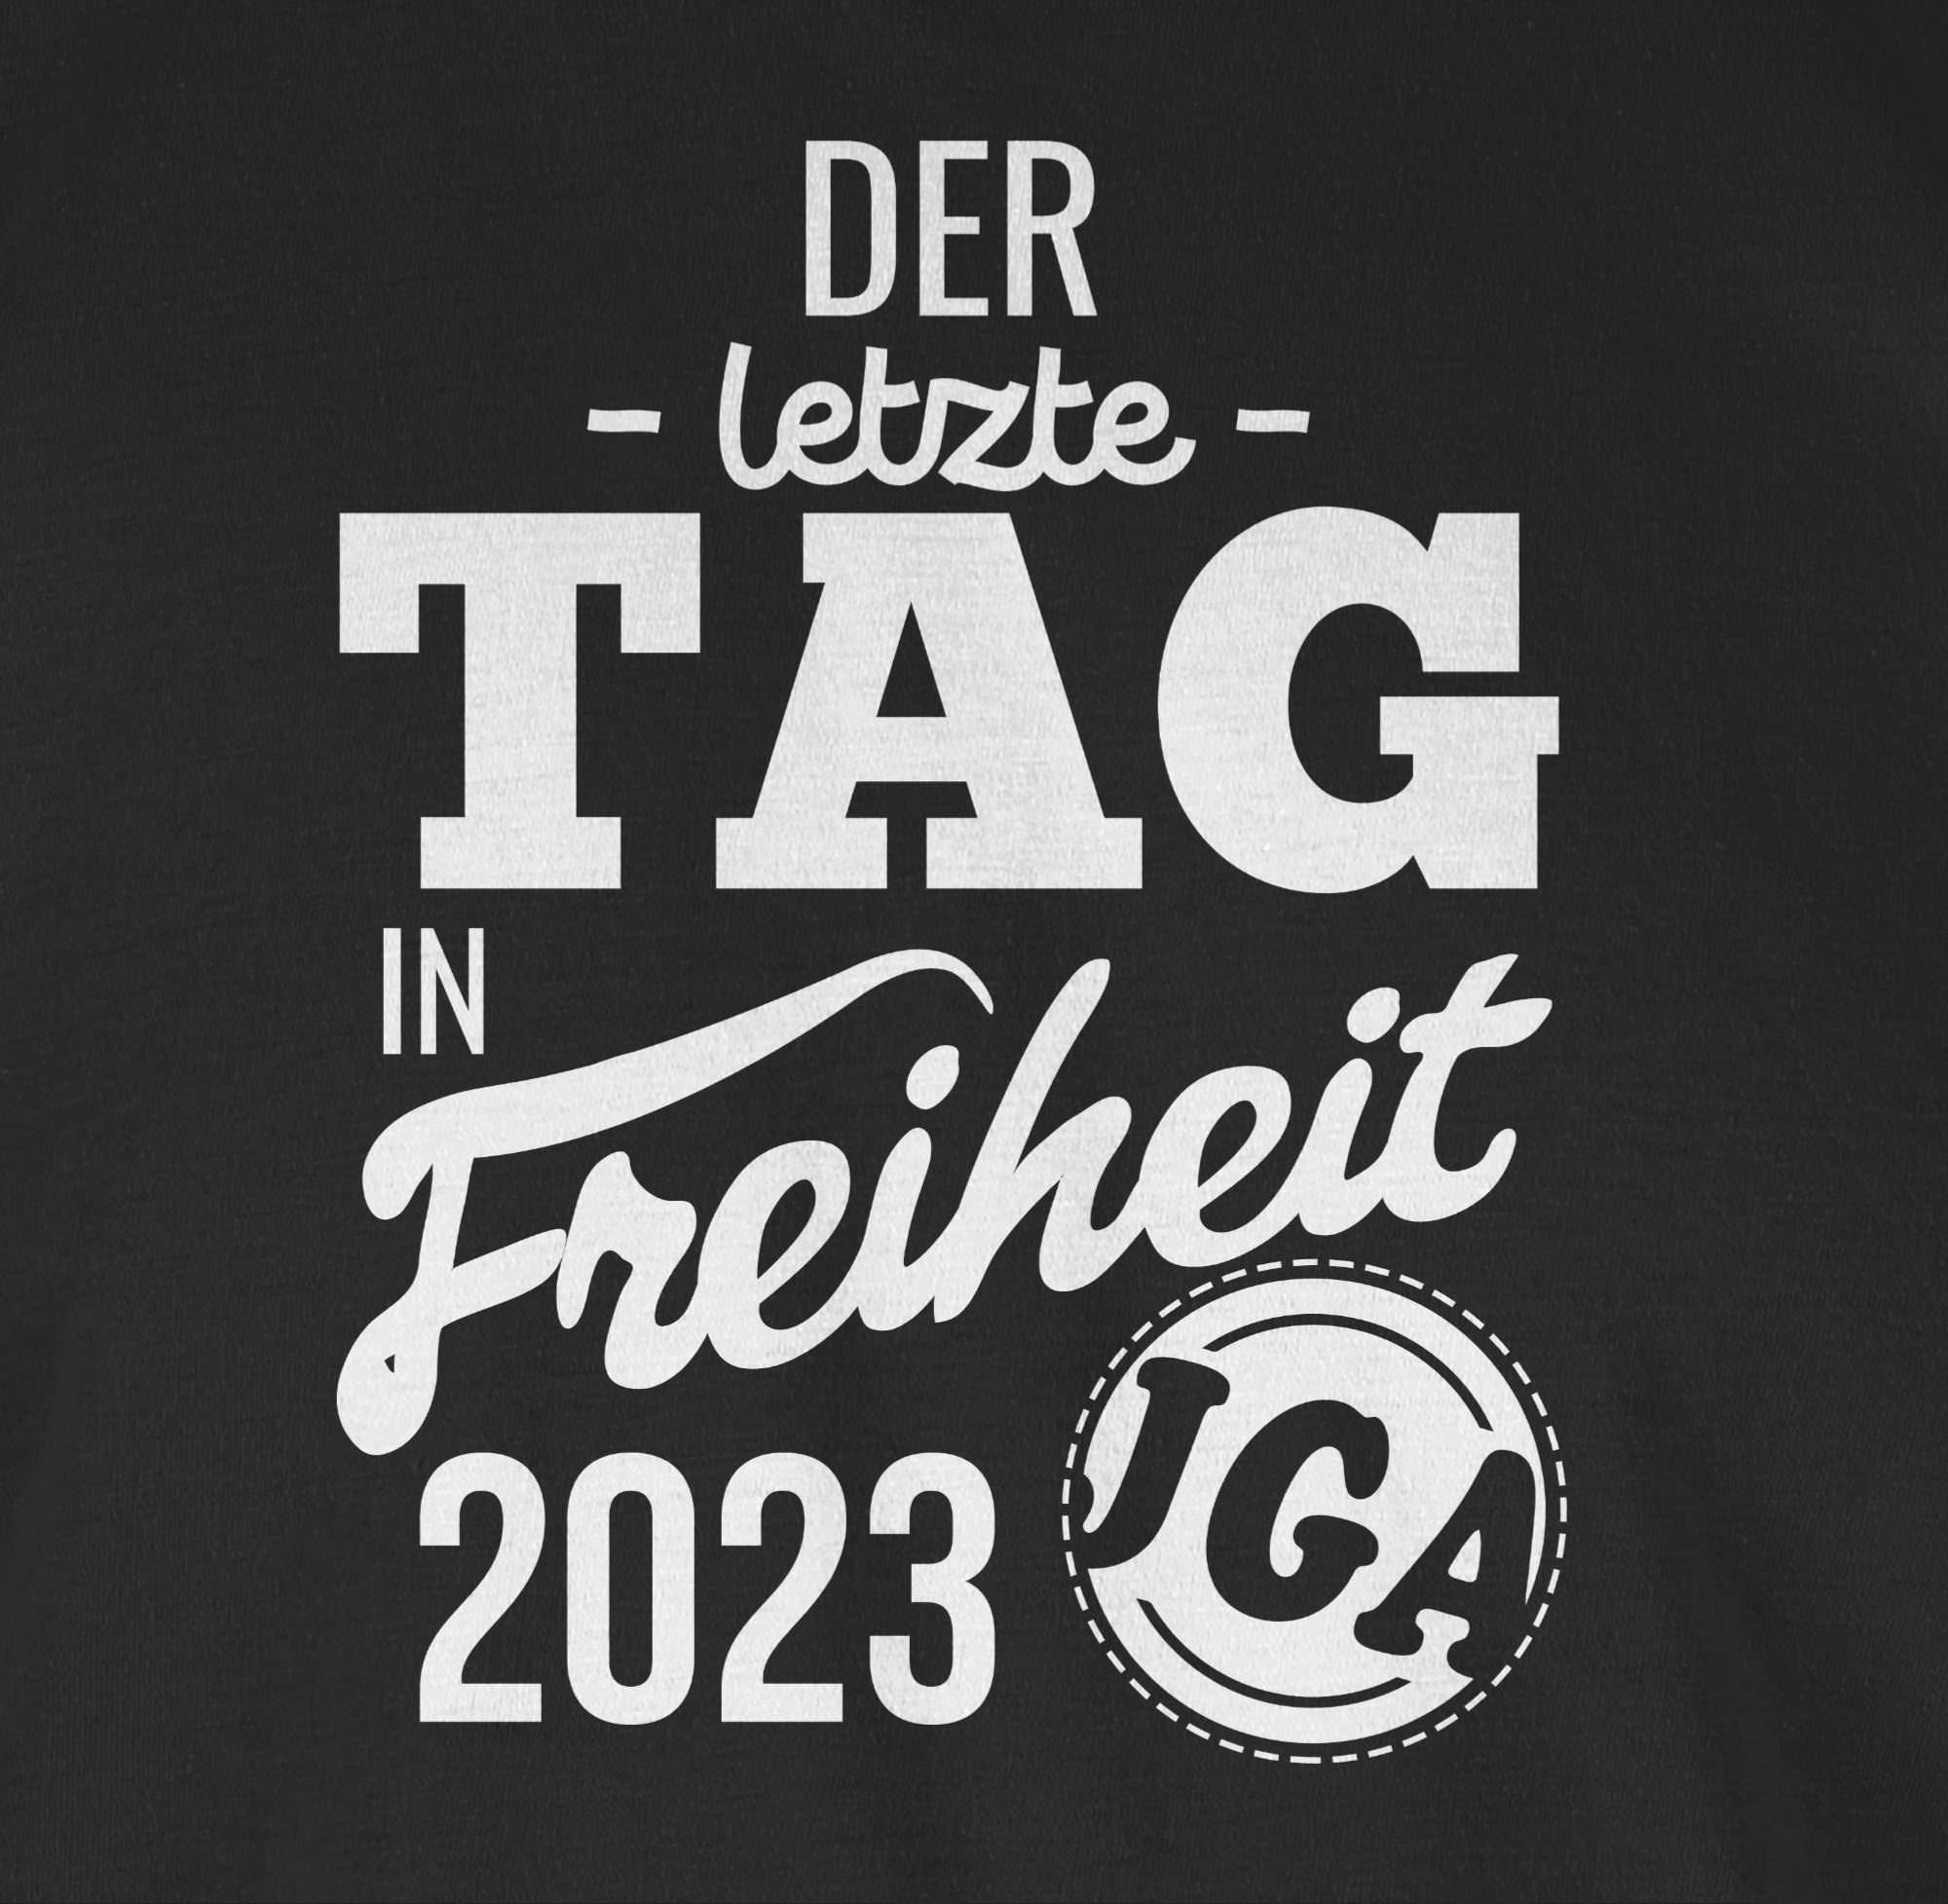 letzte JGA Männer Tag Schwarz Freiheit Shirtracer Der 2023 in 1 T-Shirt